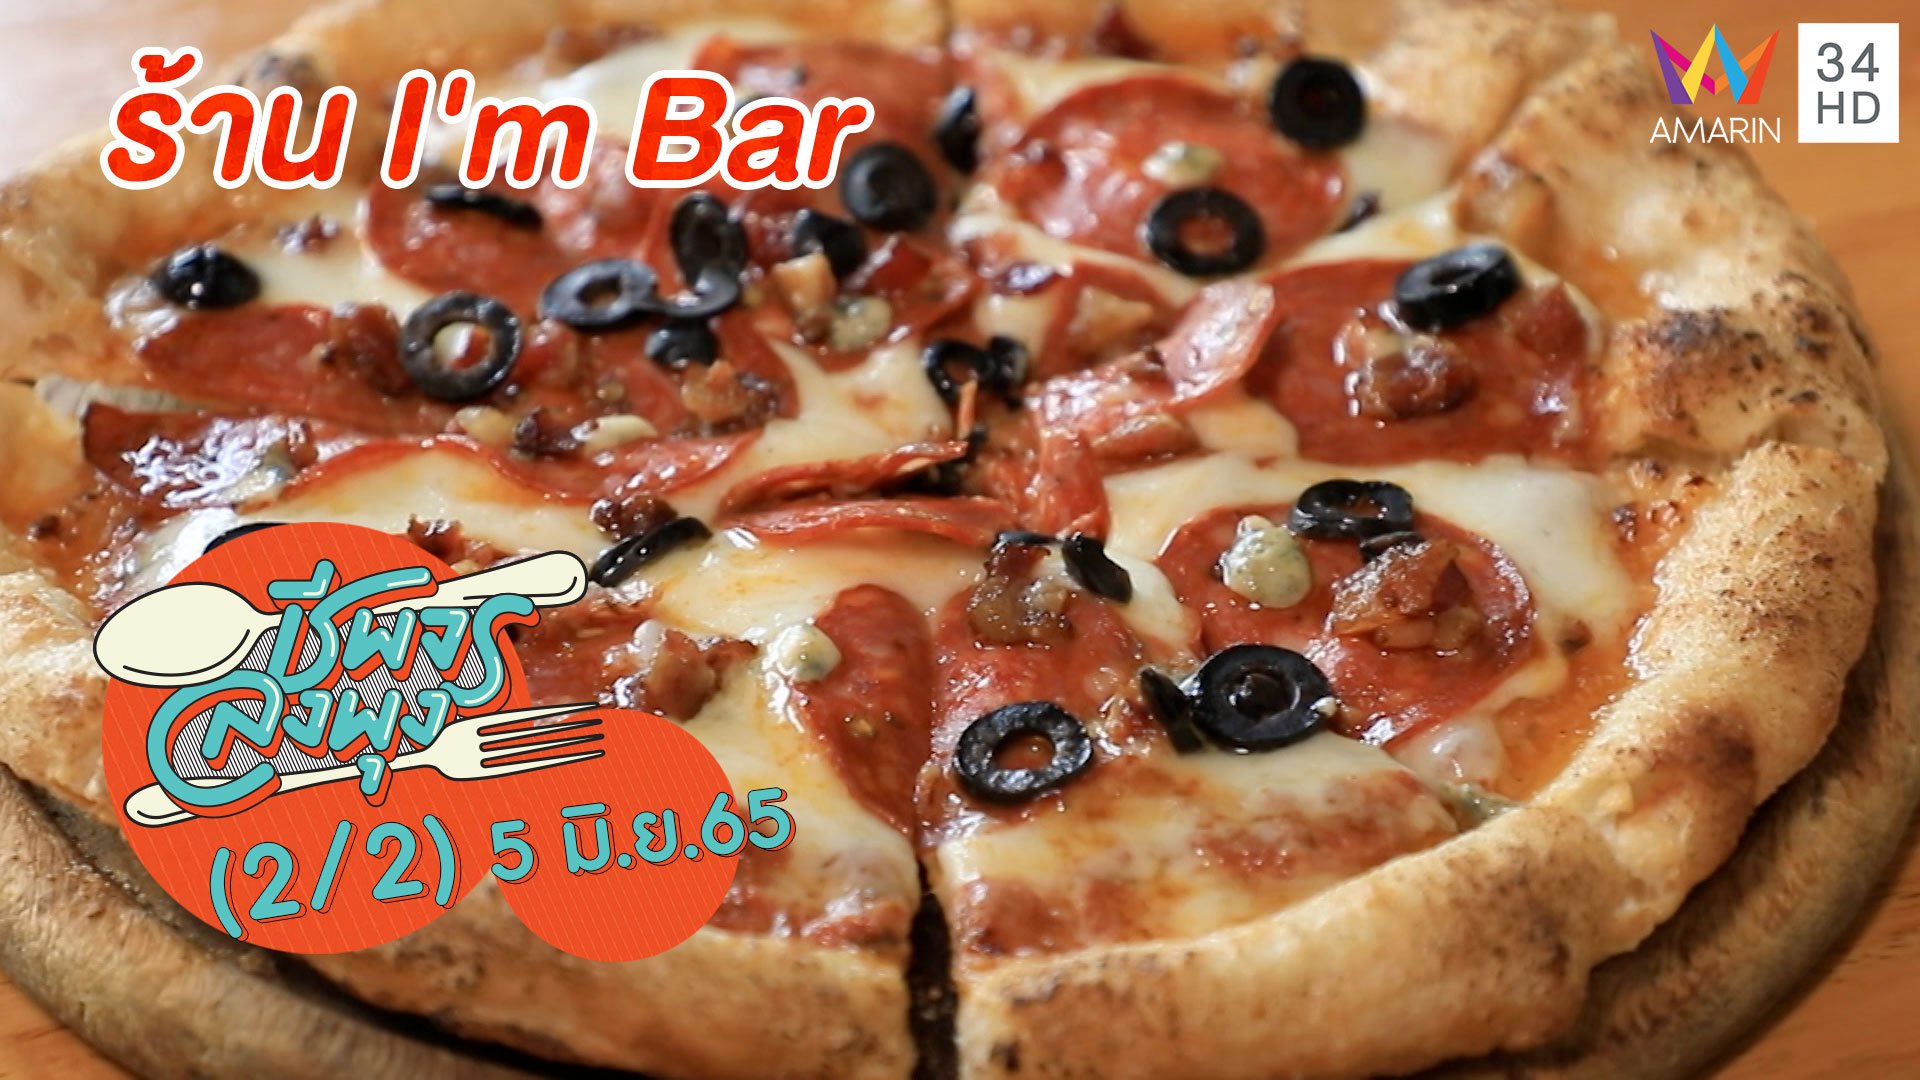 อาหารอิตาเลียนรสเลิศ @ร้าน I'm Bar | ชีพจรลงพุง | 5 มิ.ย. 65 (2/2) | AMARIN TVHD34